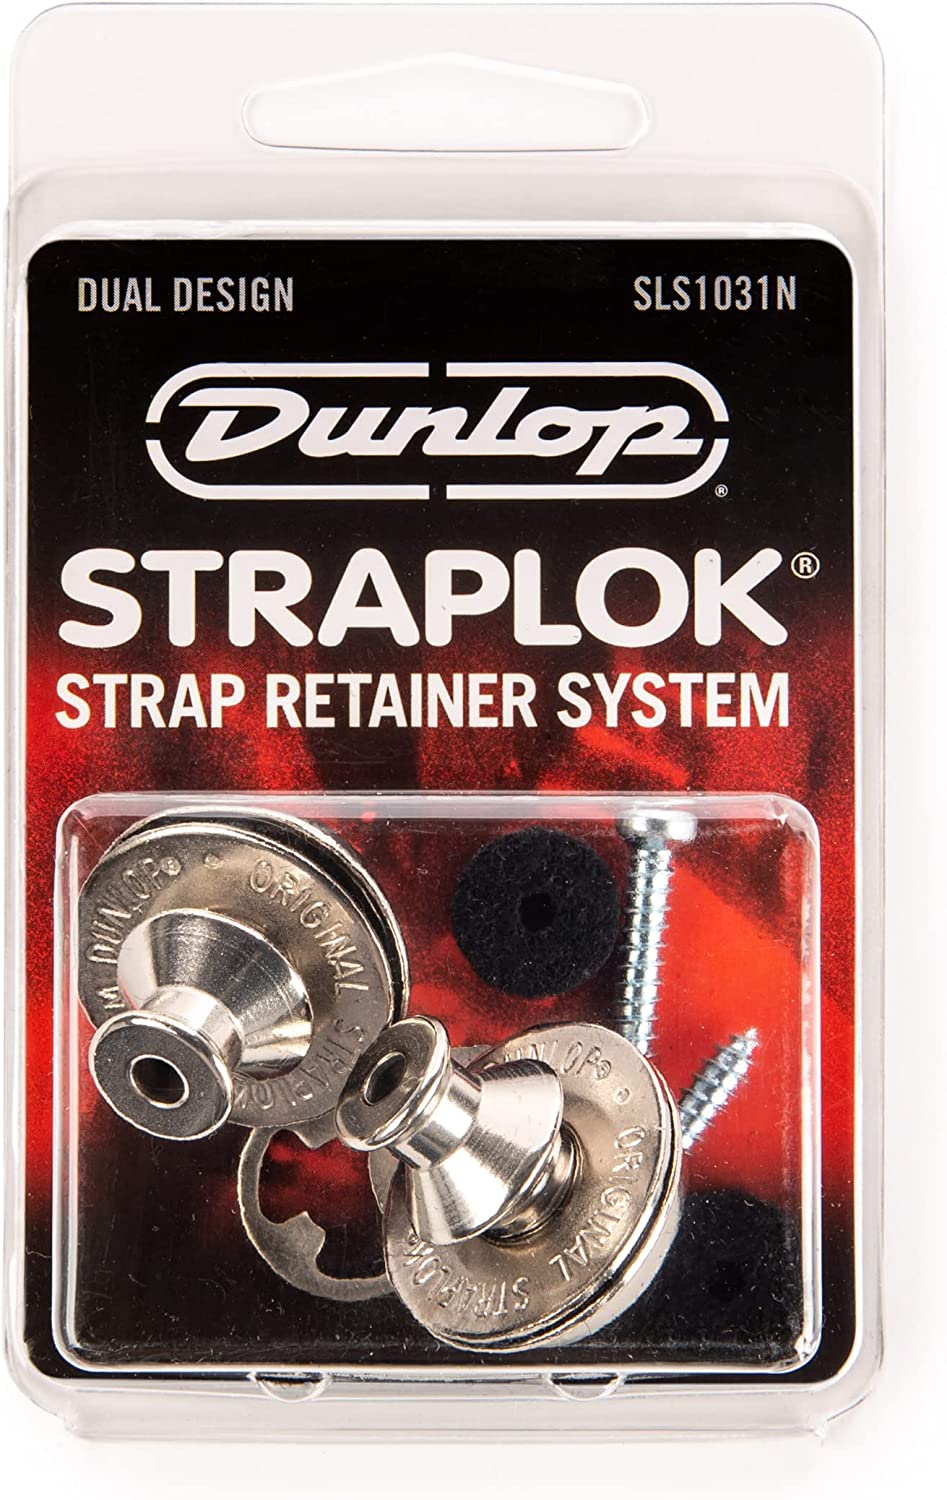 Dunlop Straplok Dual Design Strap Retainer System, Nickel